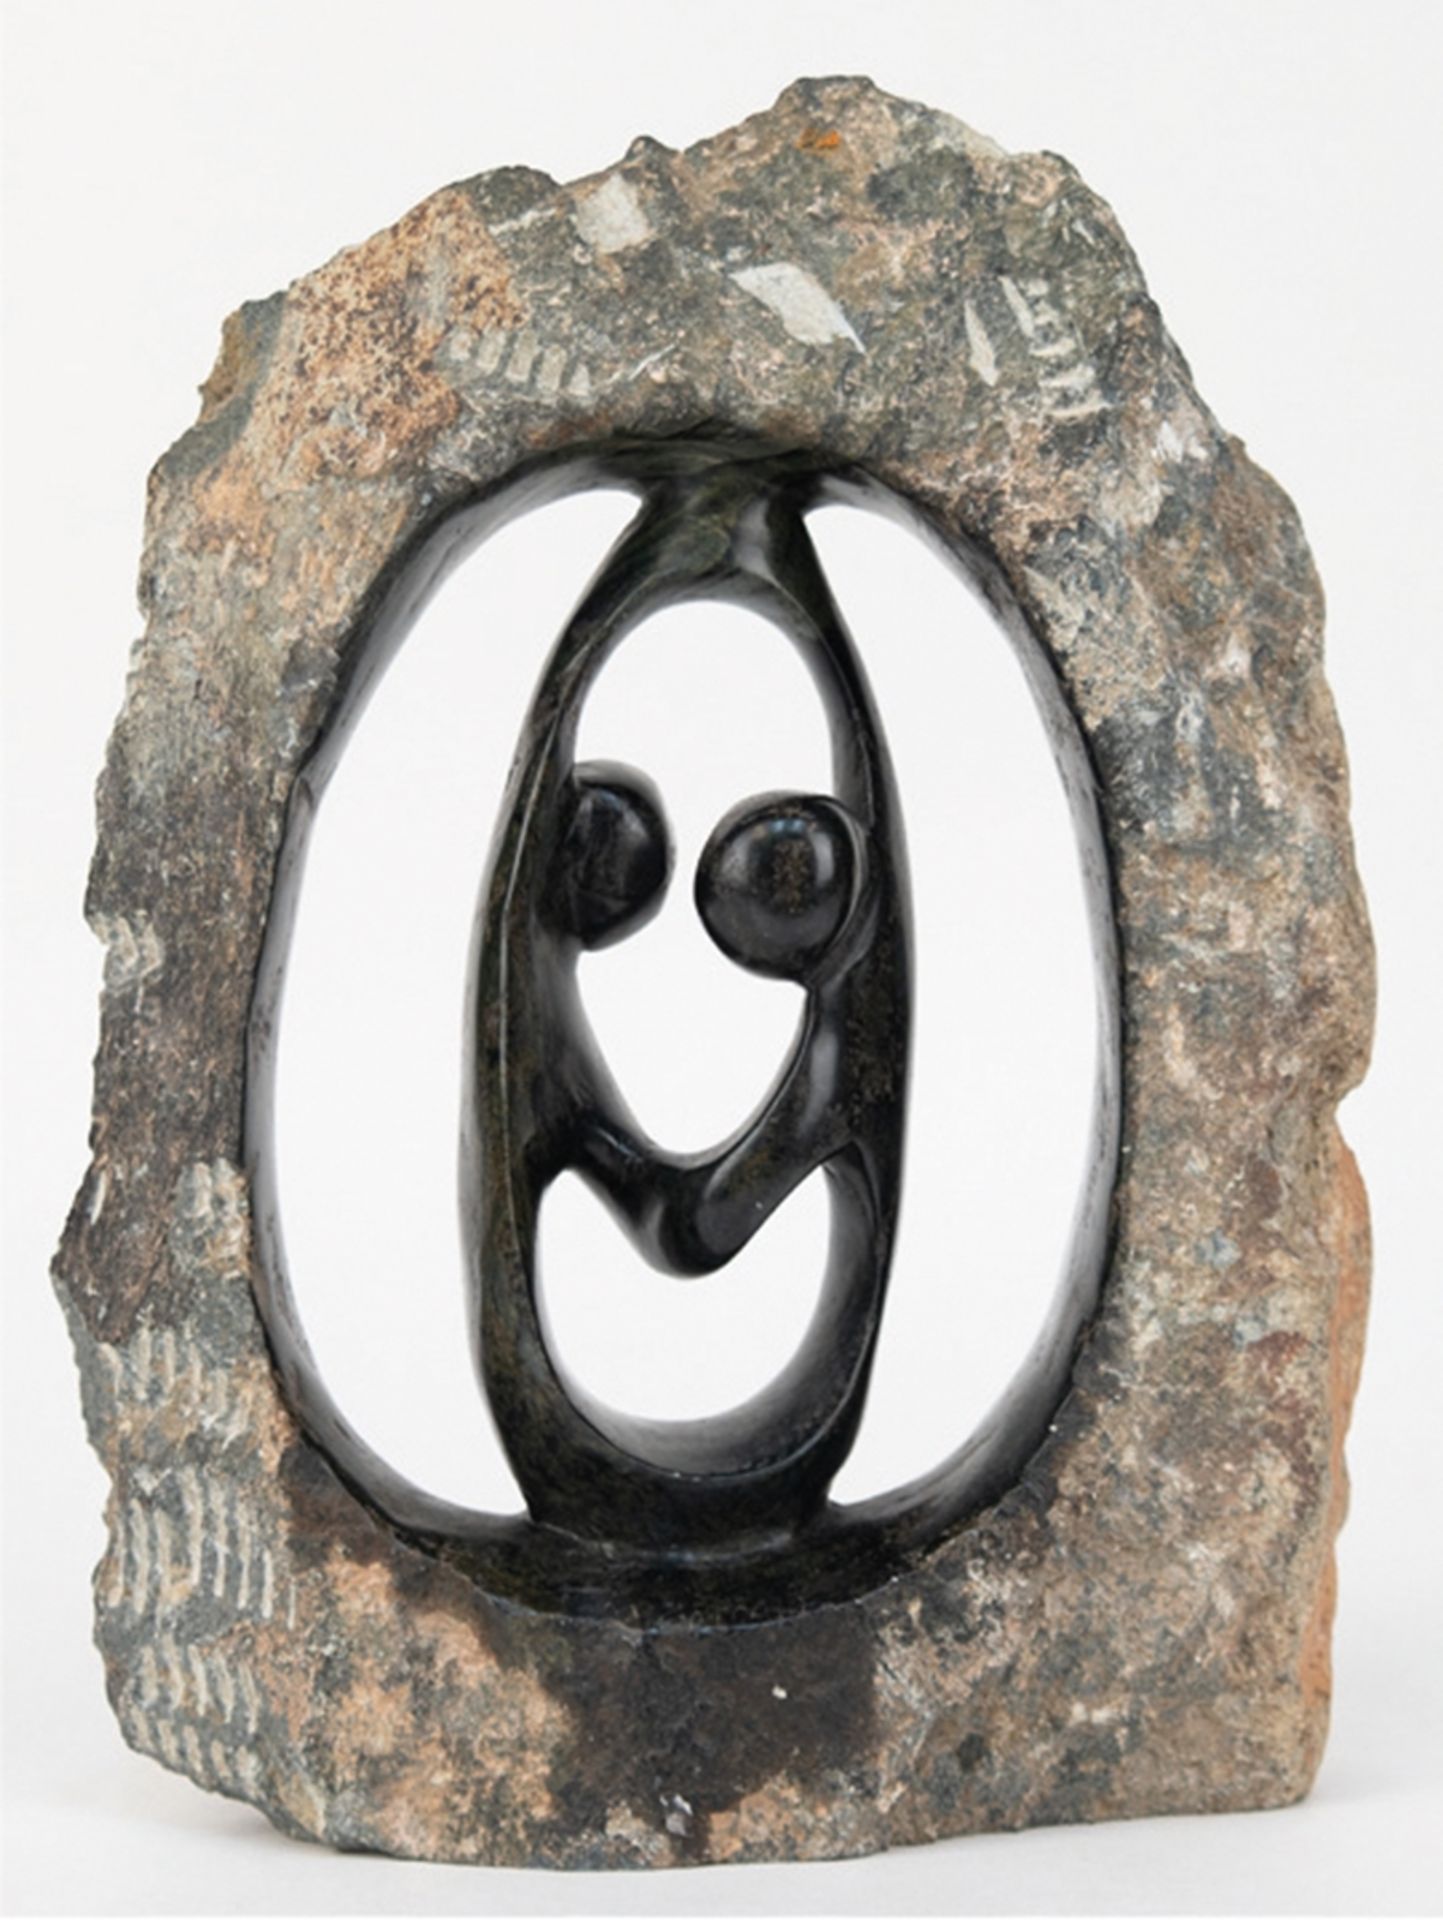 Steinskulptur "Tanzendes Paar im Rahmen", Naturstein mit schwarzem Einschluß,  durchbrochen gearbei